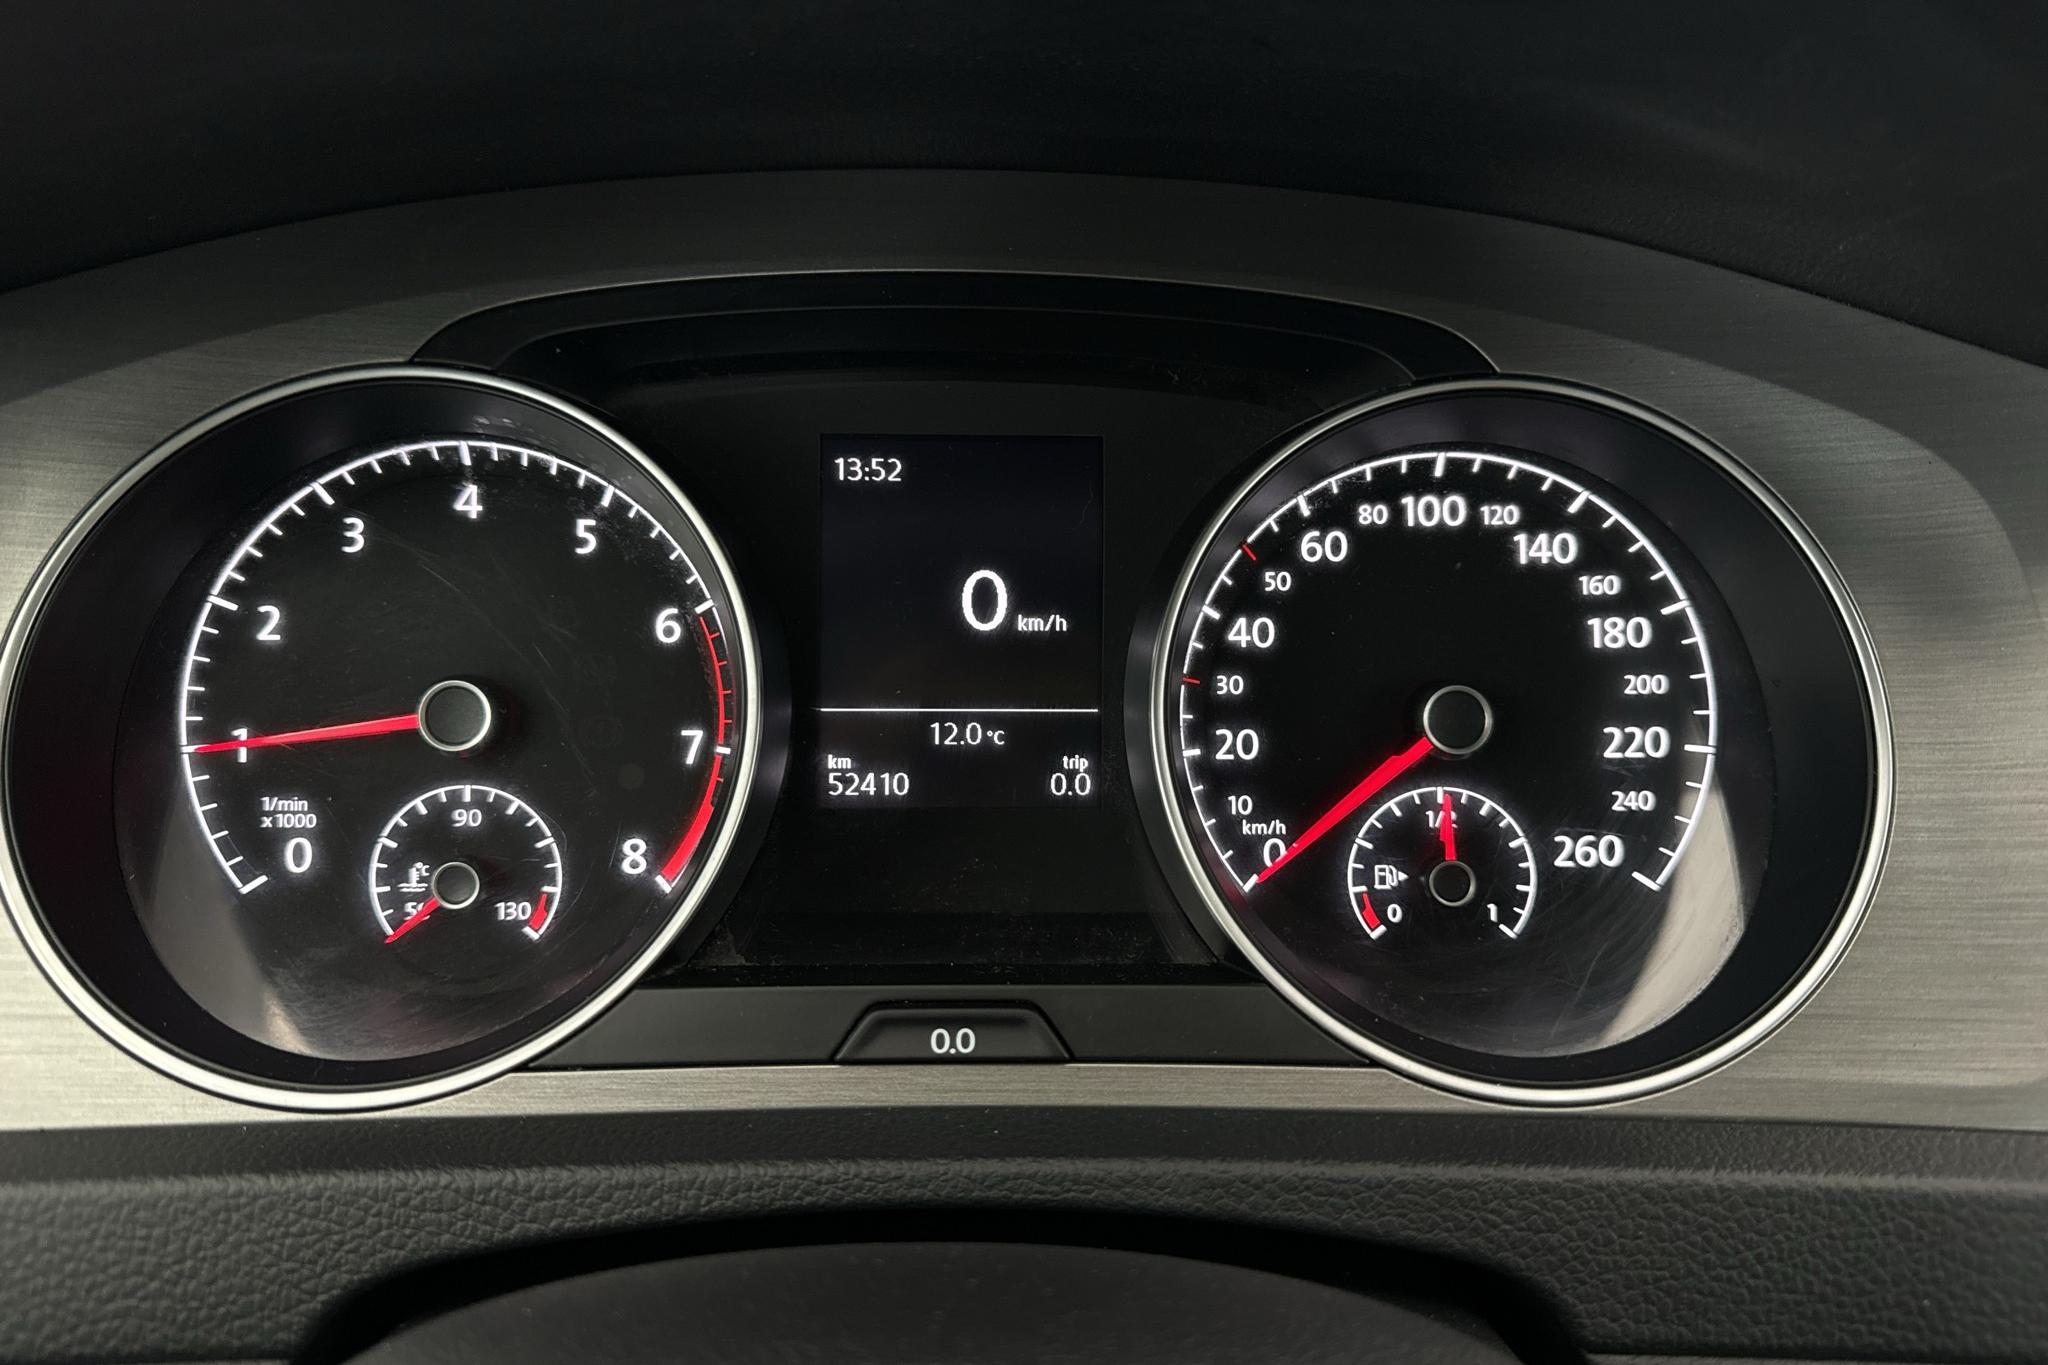 VW Golf VII 1.2 TSI 5dr (105hk) - 52 410 km - Käsitsi - valge - 2015